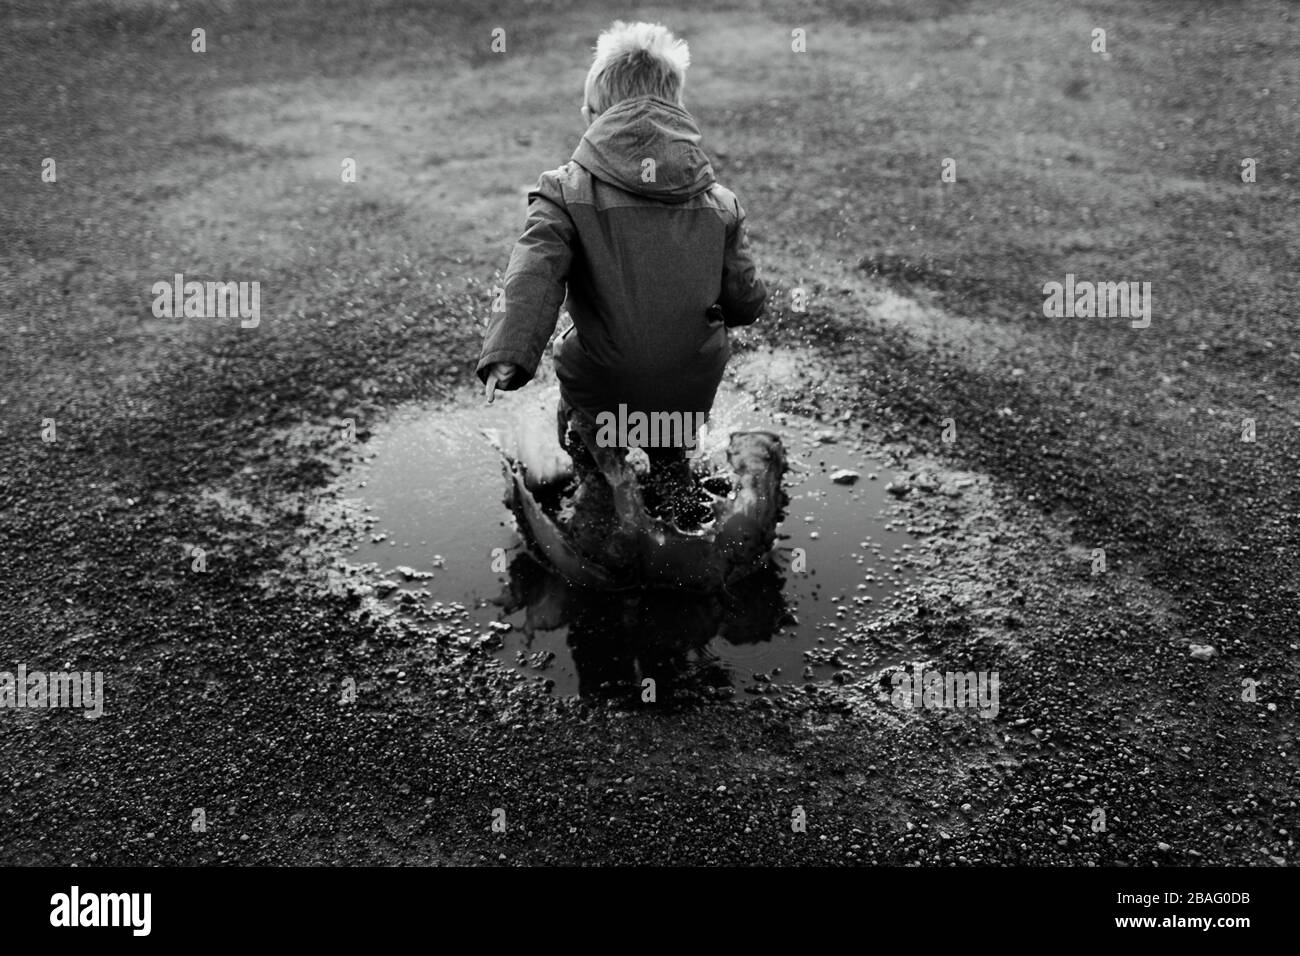 Un petit garçon sautant dans une flaque et créant un énorme splash en noir et blanc (B&W) Banque D'Images